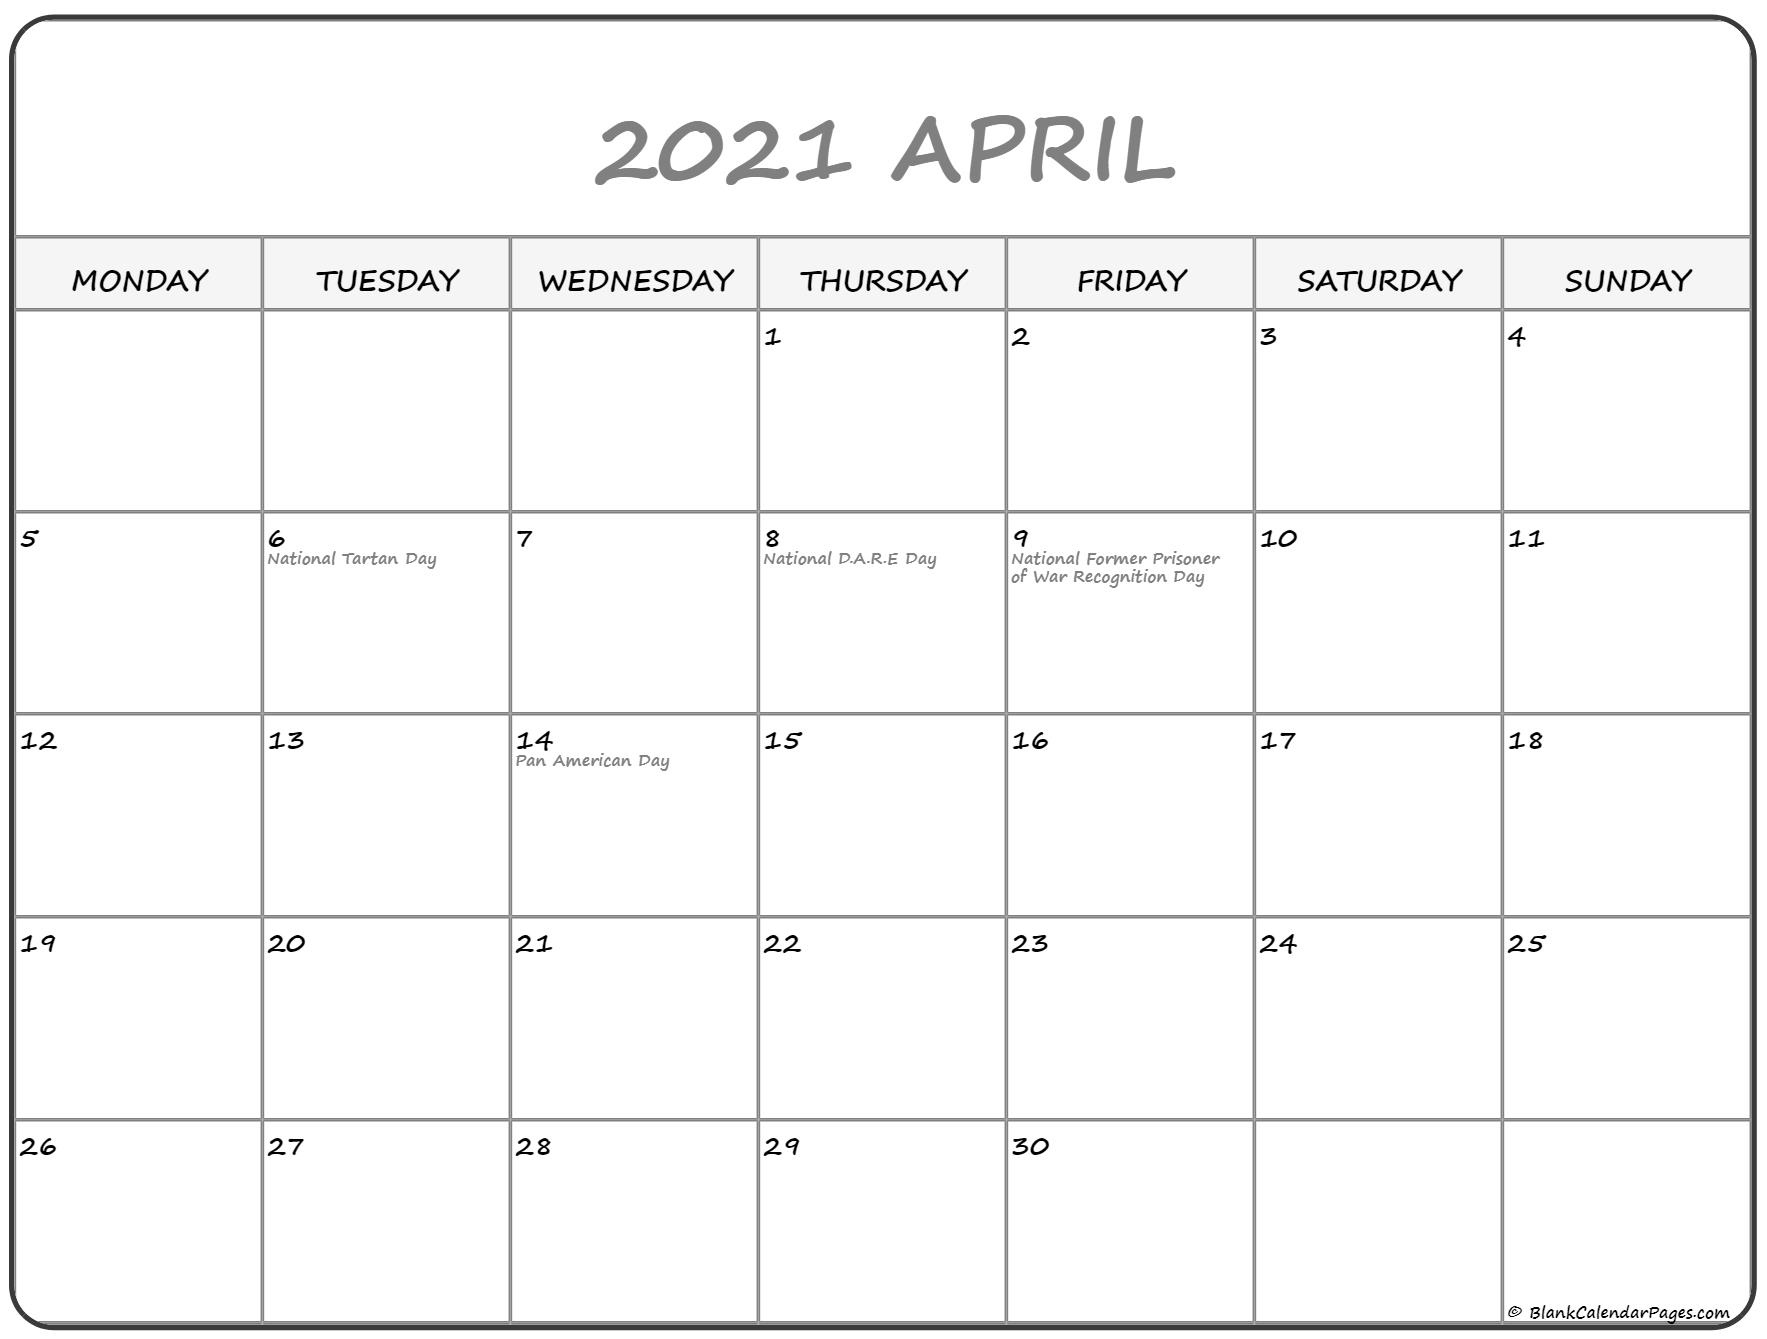 April 2021 Monday Calendar | Monday To Sunday April - September 2021 Calendar